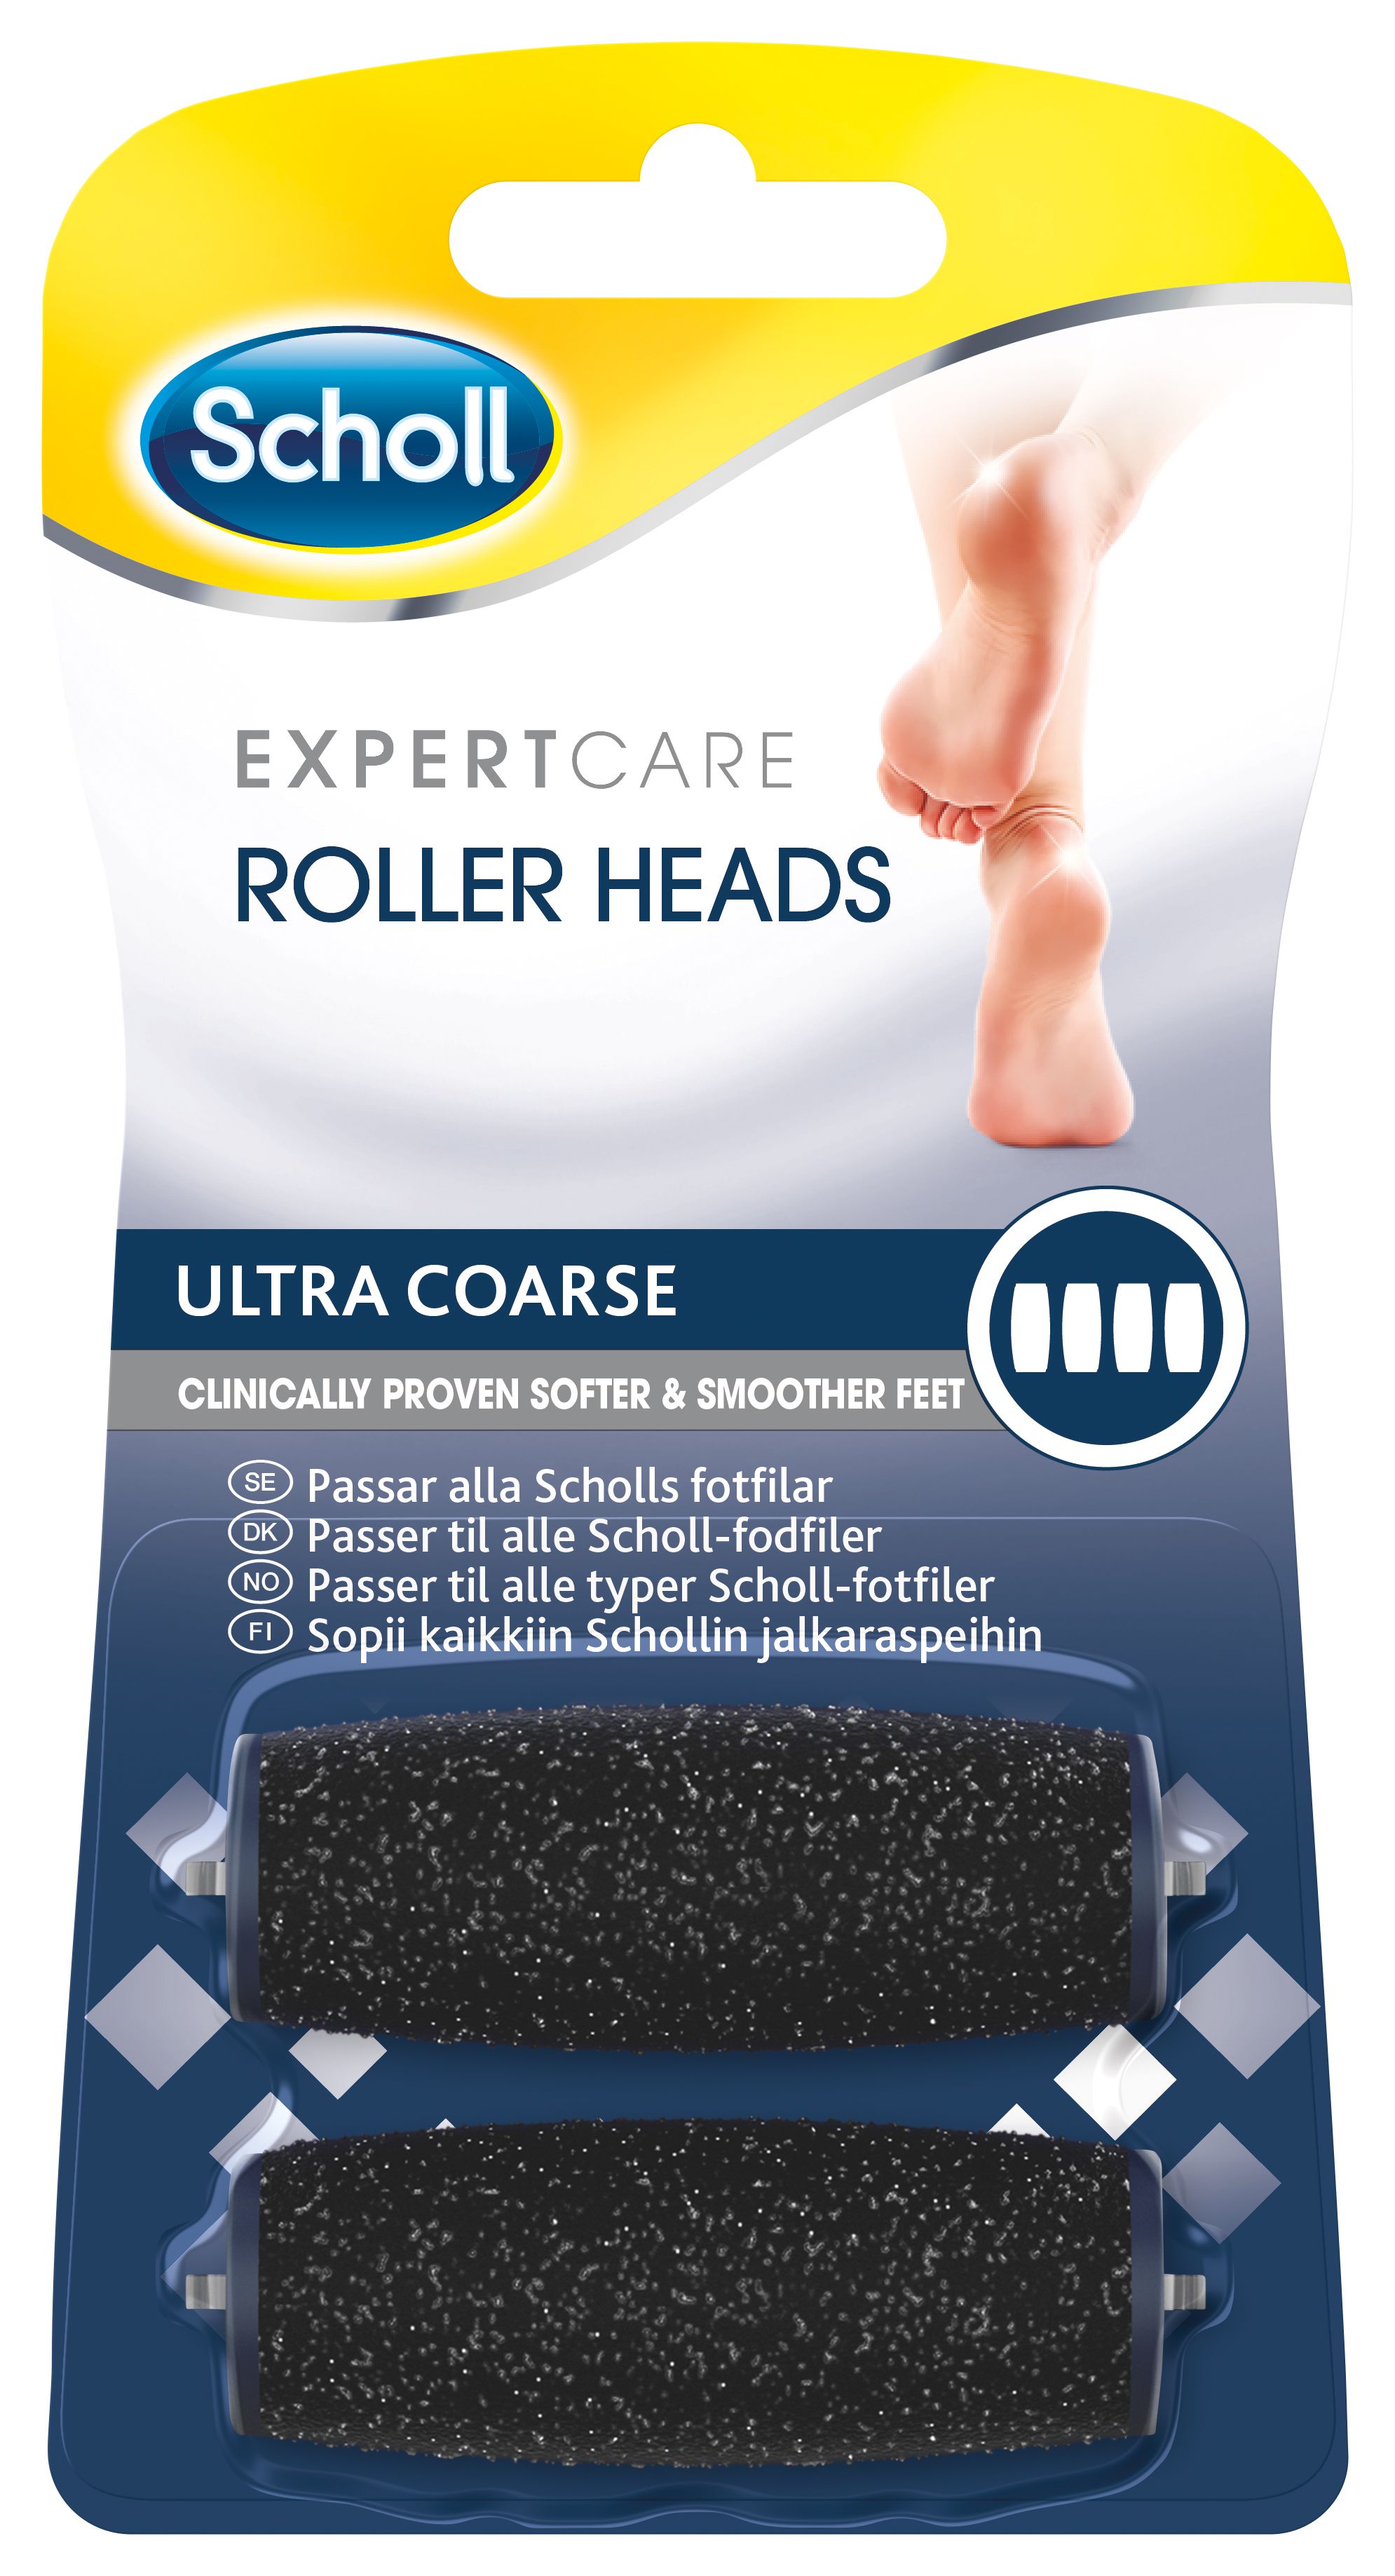 Grudge rulletrappe varemærke Scholl Expert Care Refills - Ultra Coarse 2 stk. - Main - Støttestrømpen.dk